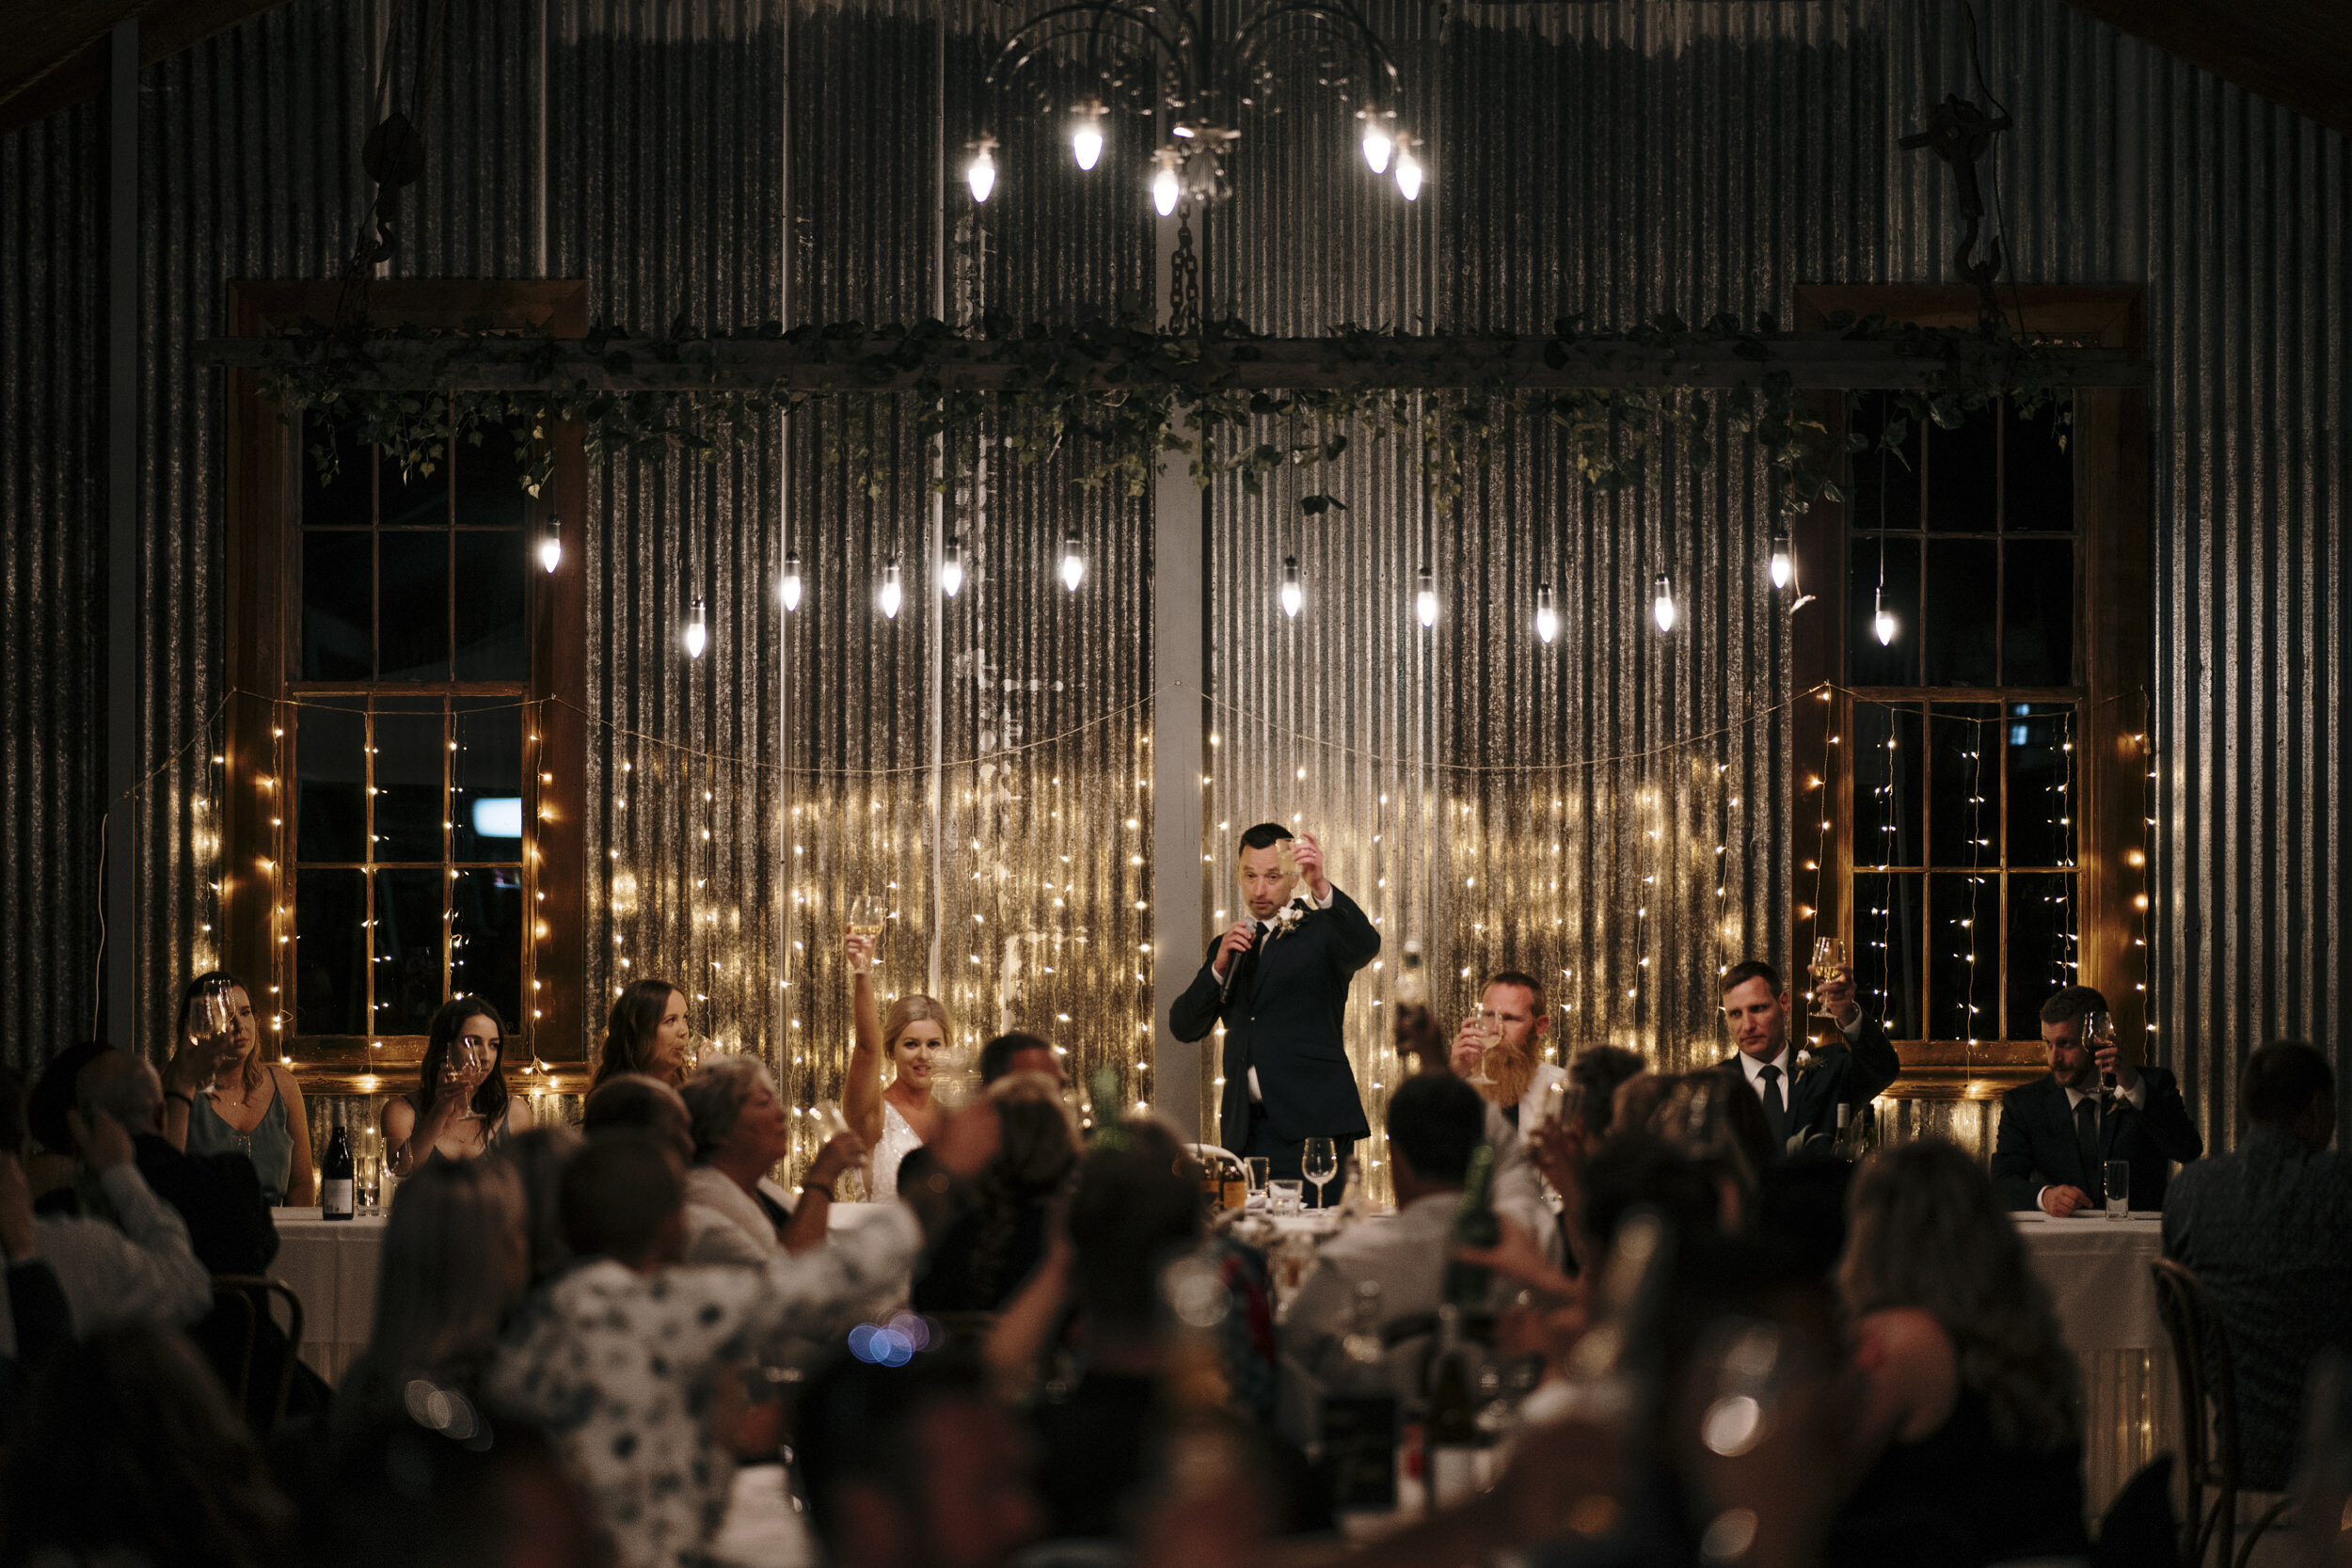 Broadlands Lodge Wedding Venue | Taupo Venue | Auckland Wedding Photographer | Auckland Wedding Videography | Rustic Wedding